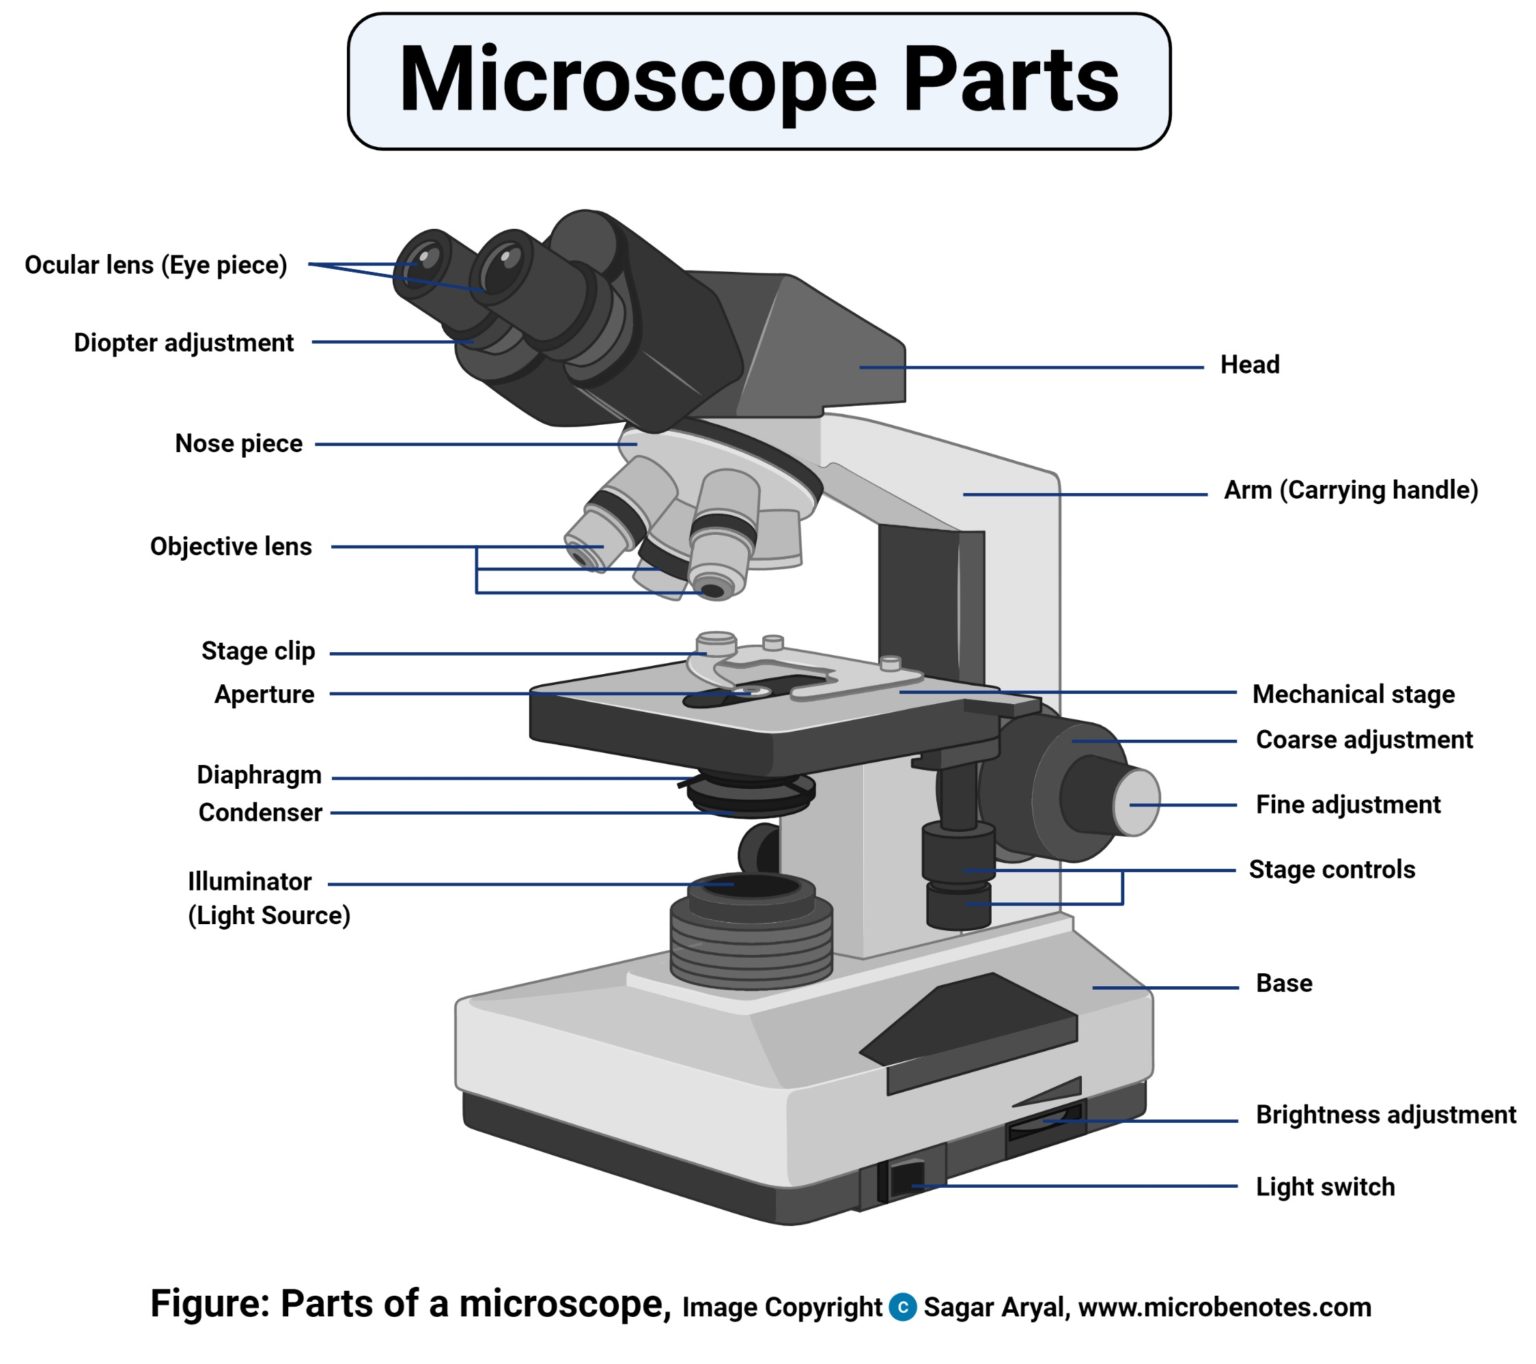 Microscope Lab Letter E